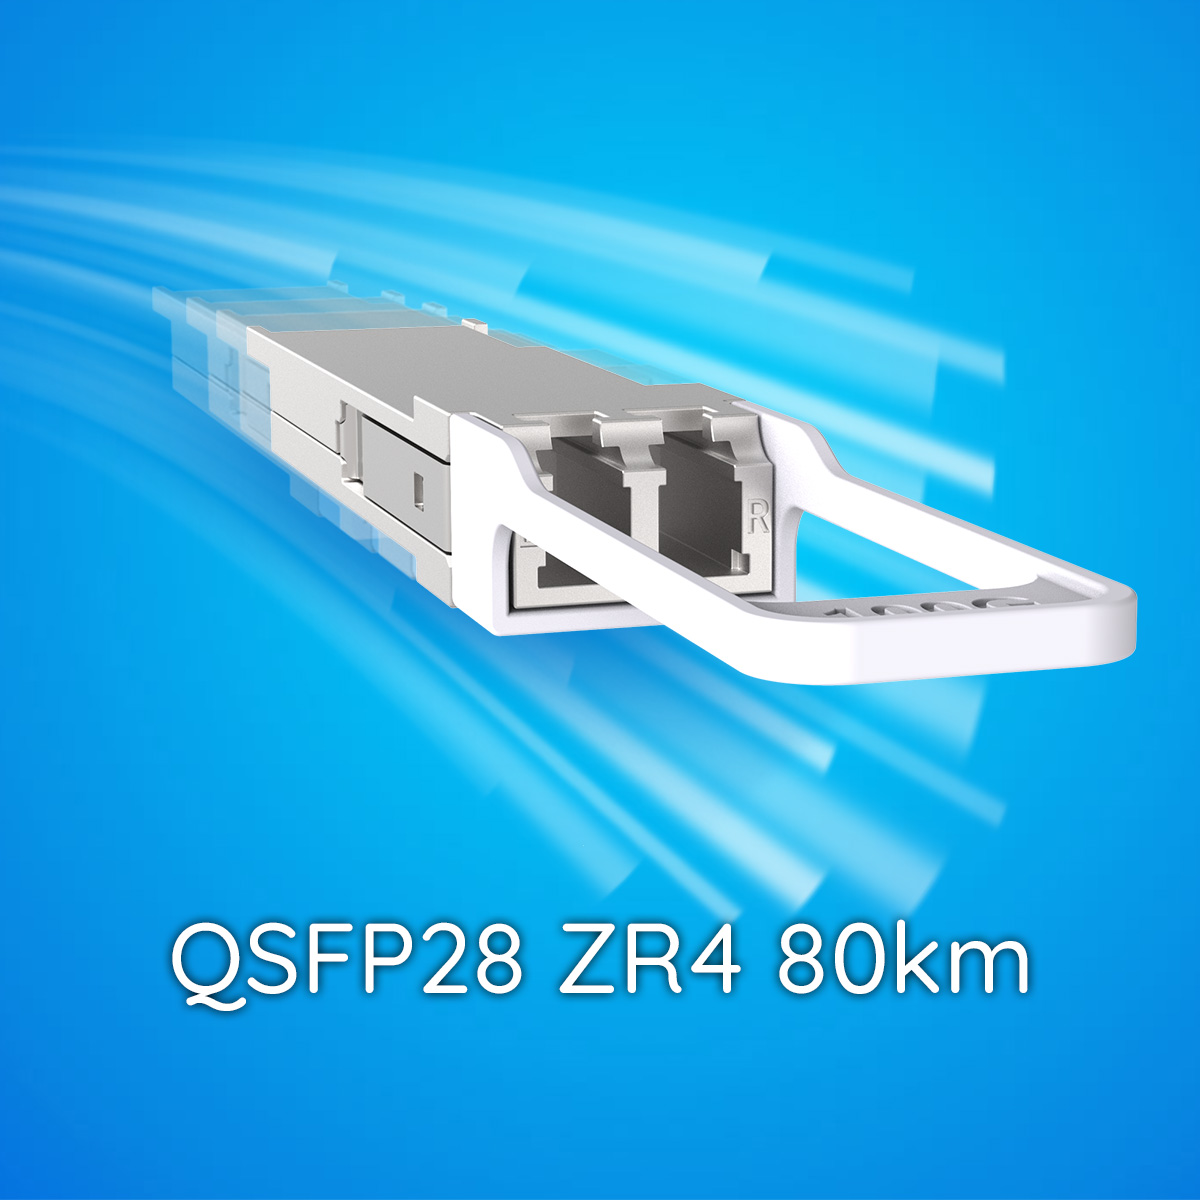 QSFP28 ZR4